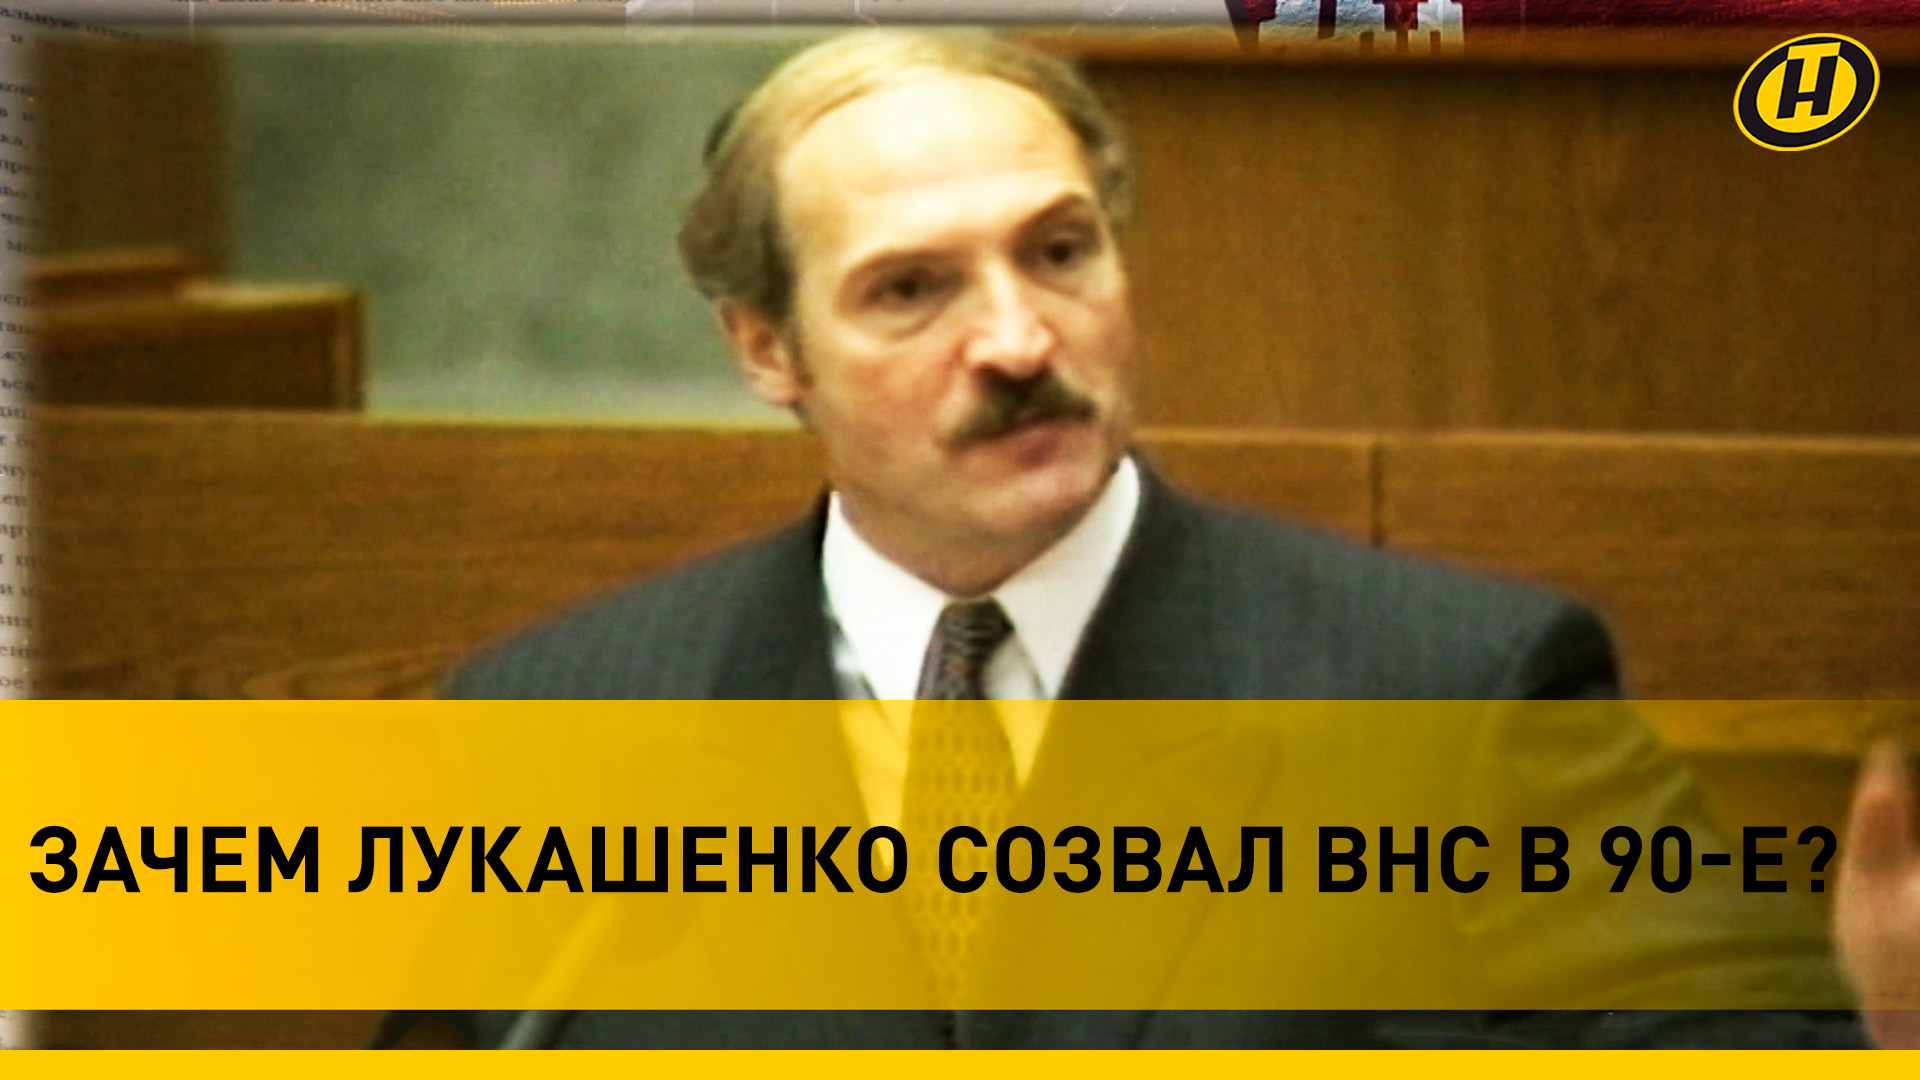 Лукашенко в 90-х: ВЛАСТЬ ВАЛЯЕТСЯ В ГРЯЗИ! Кто хочет-не хочет – топчут/ КАК В БЕЛАРУСИ ВНС СОЗДАВАЛИ